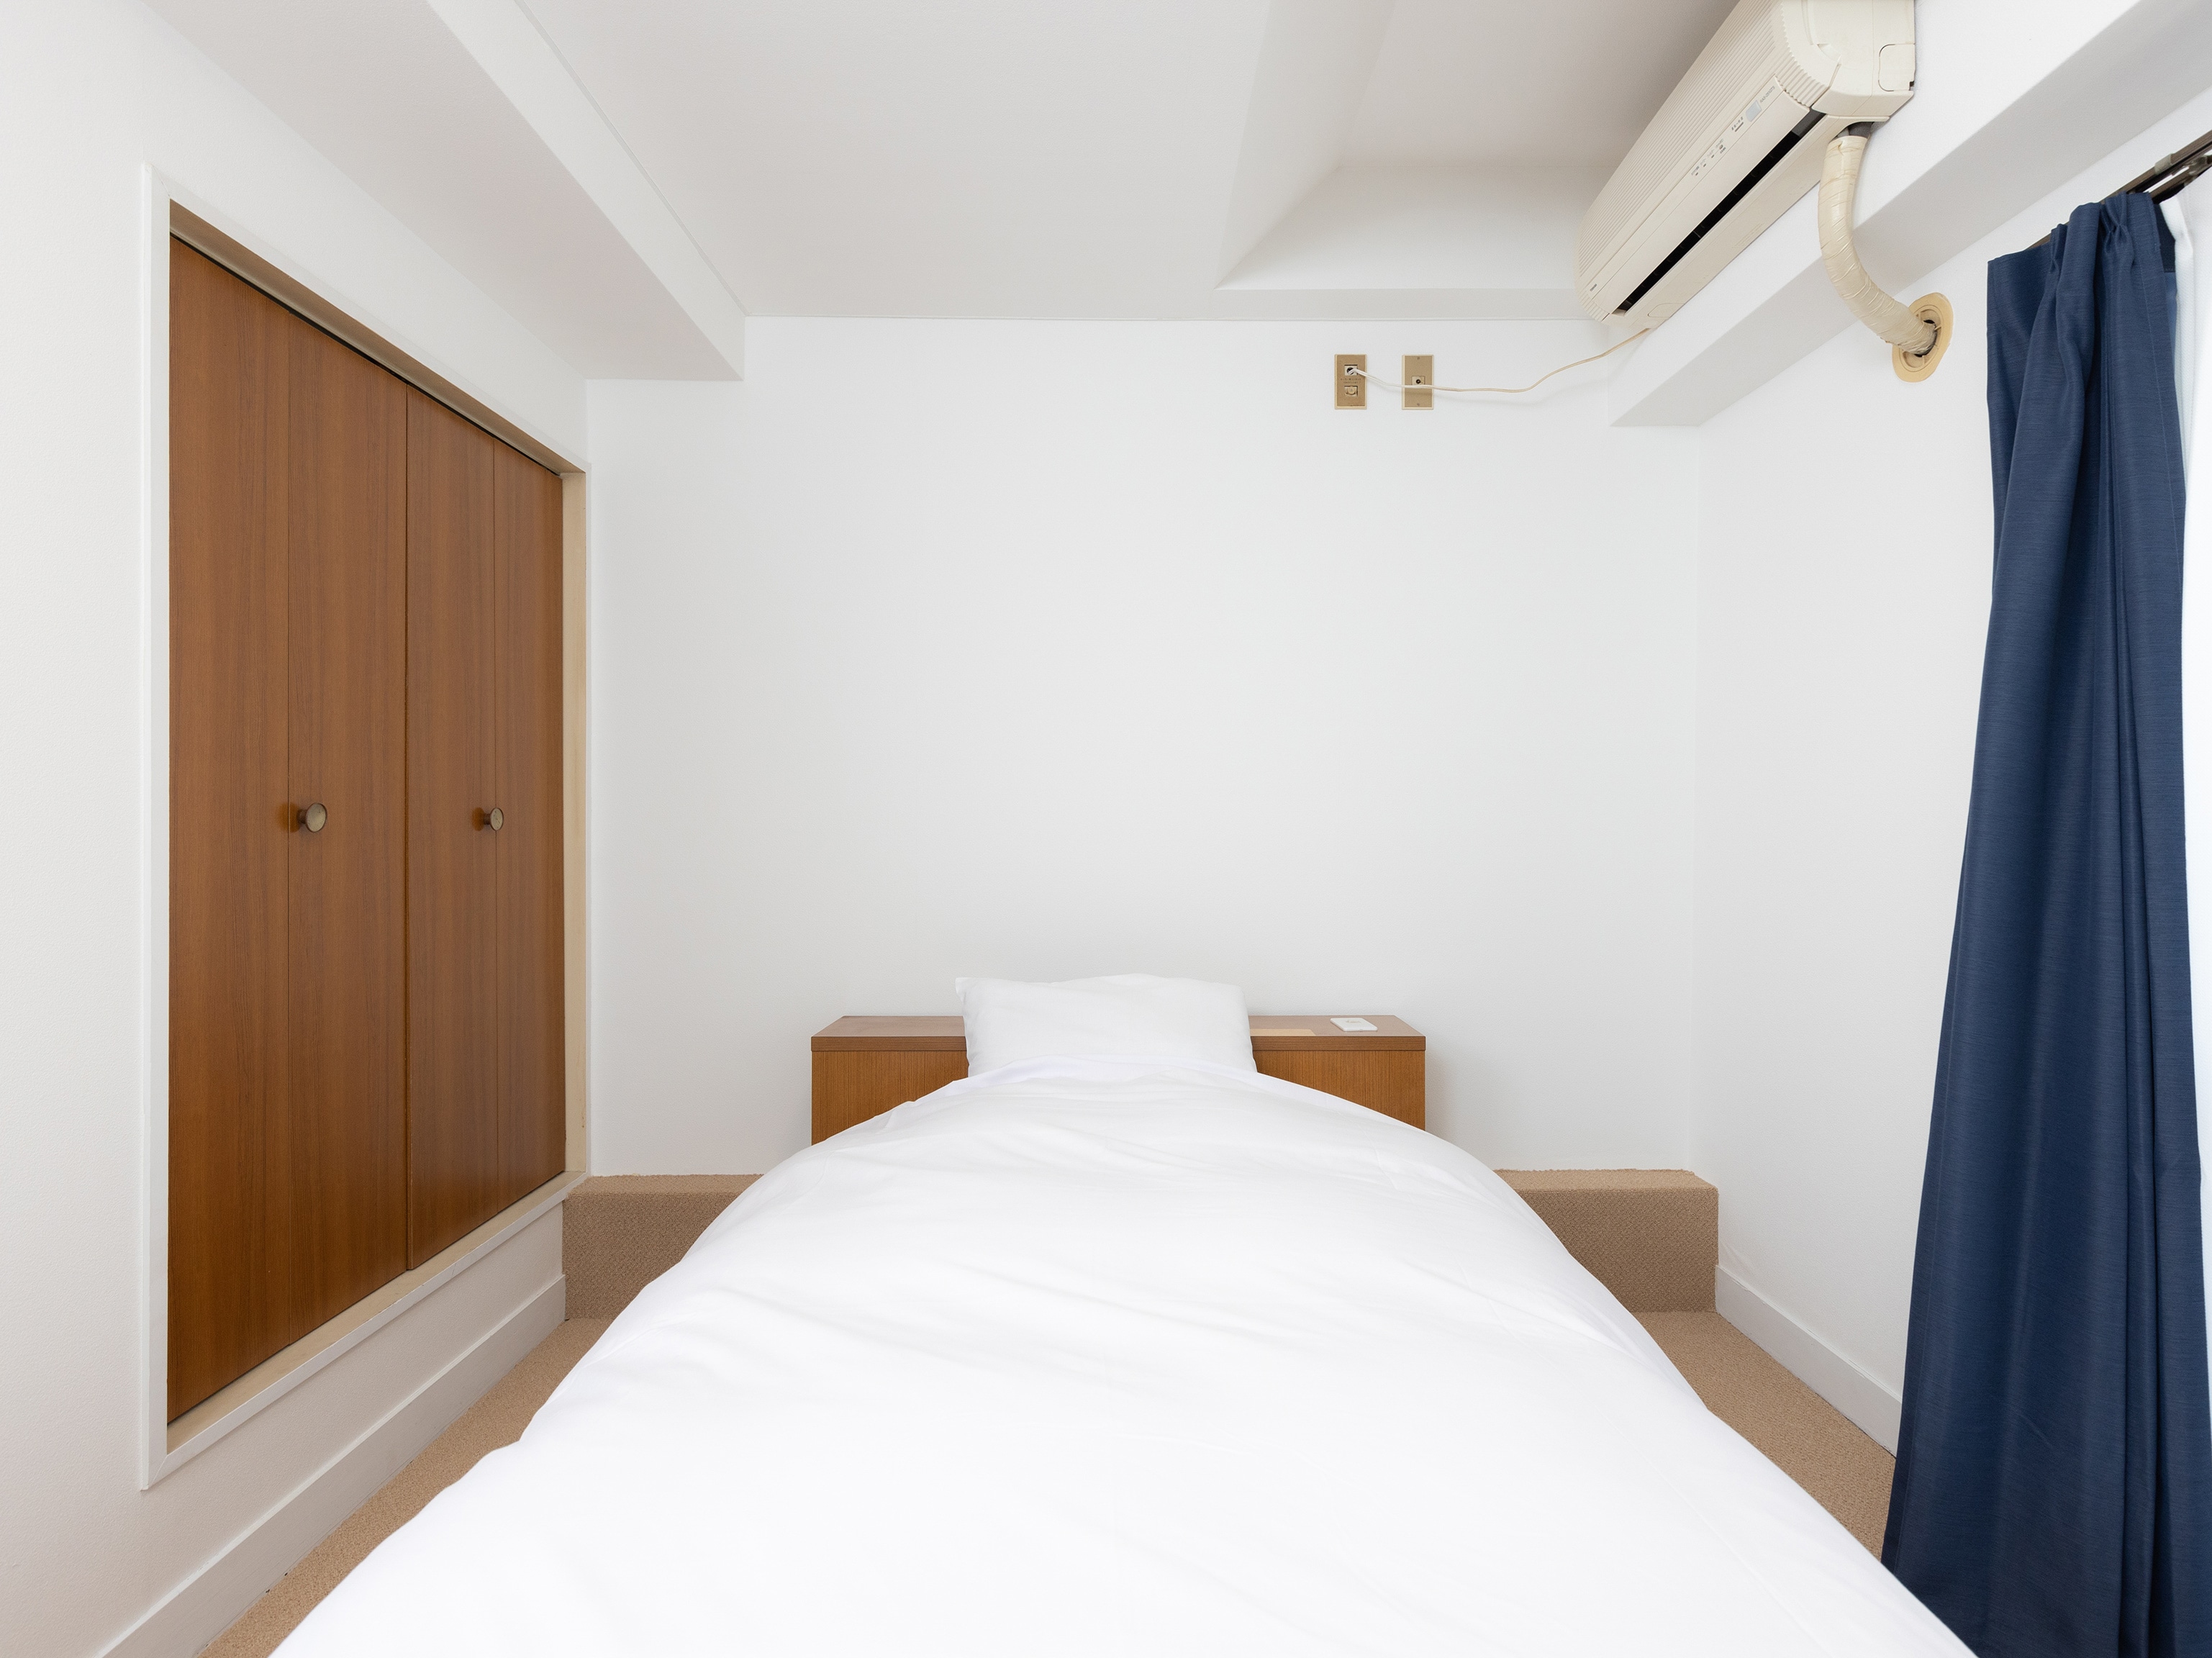 [房間] 單人間 / 19 平方米 / 100 厘米寬的床 & 次; 1 個單元 / 可容納 1 人 / 所有房間都禁止吸煙